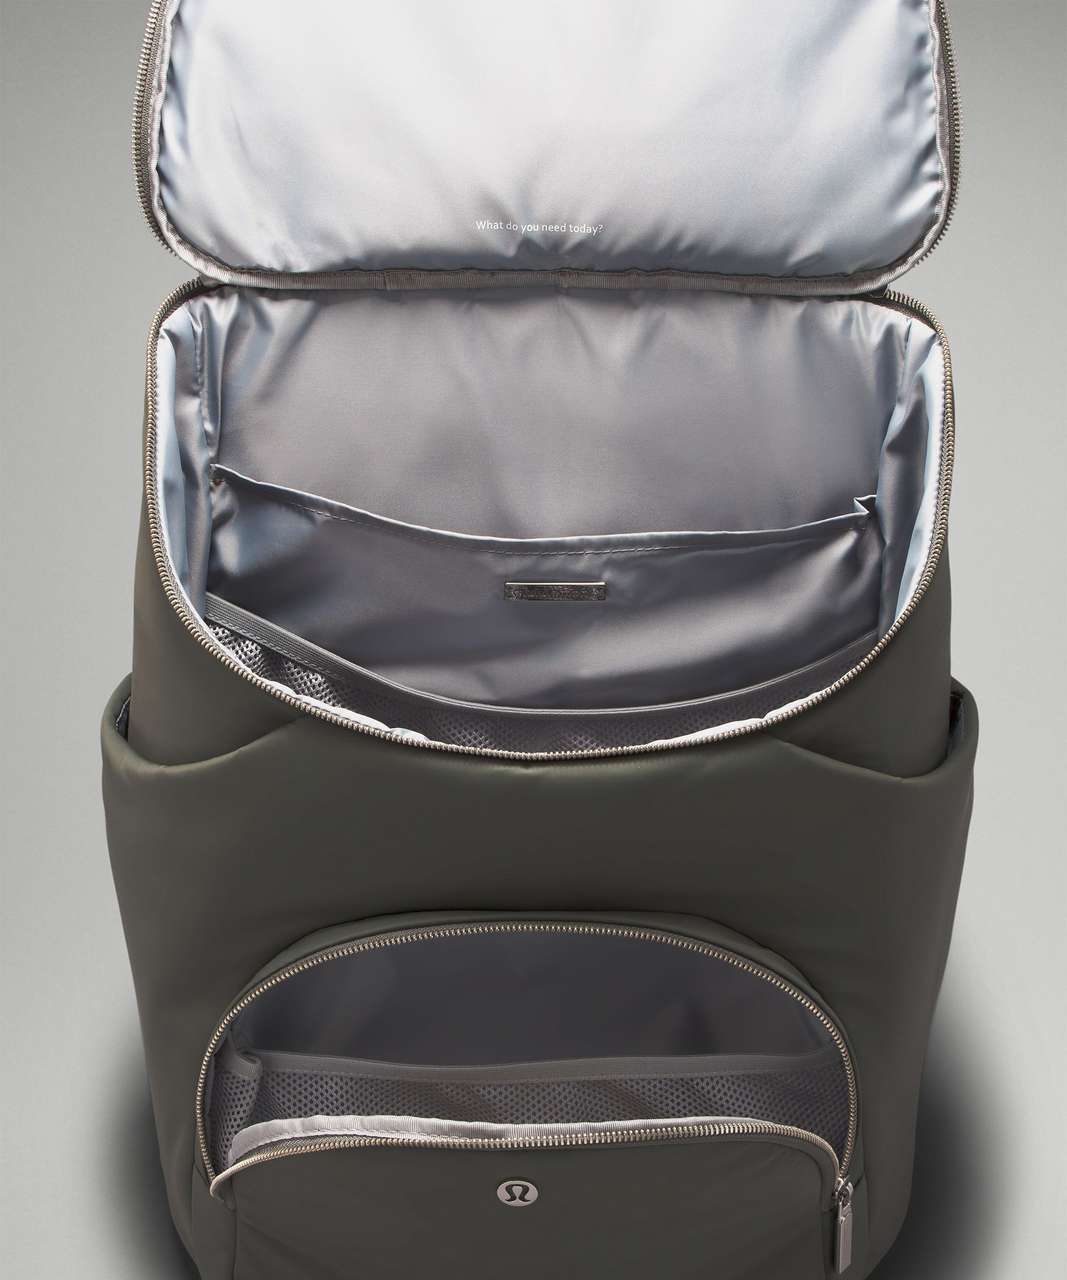 Lululemon New Parent Backpack 17l - Asphalt Grey/silver Drop